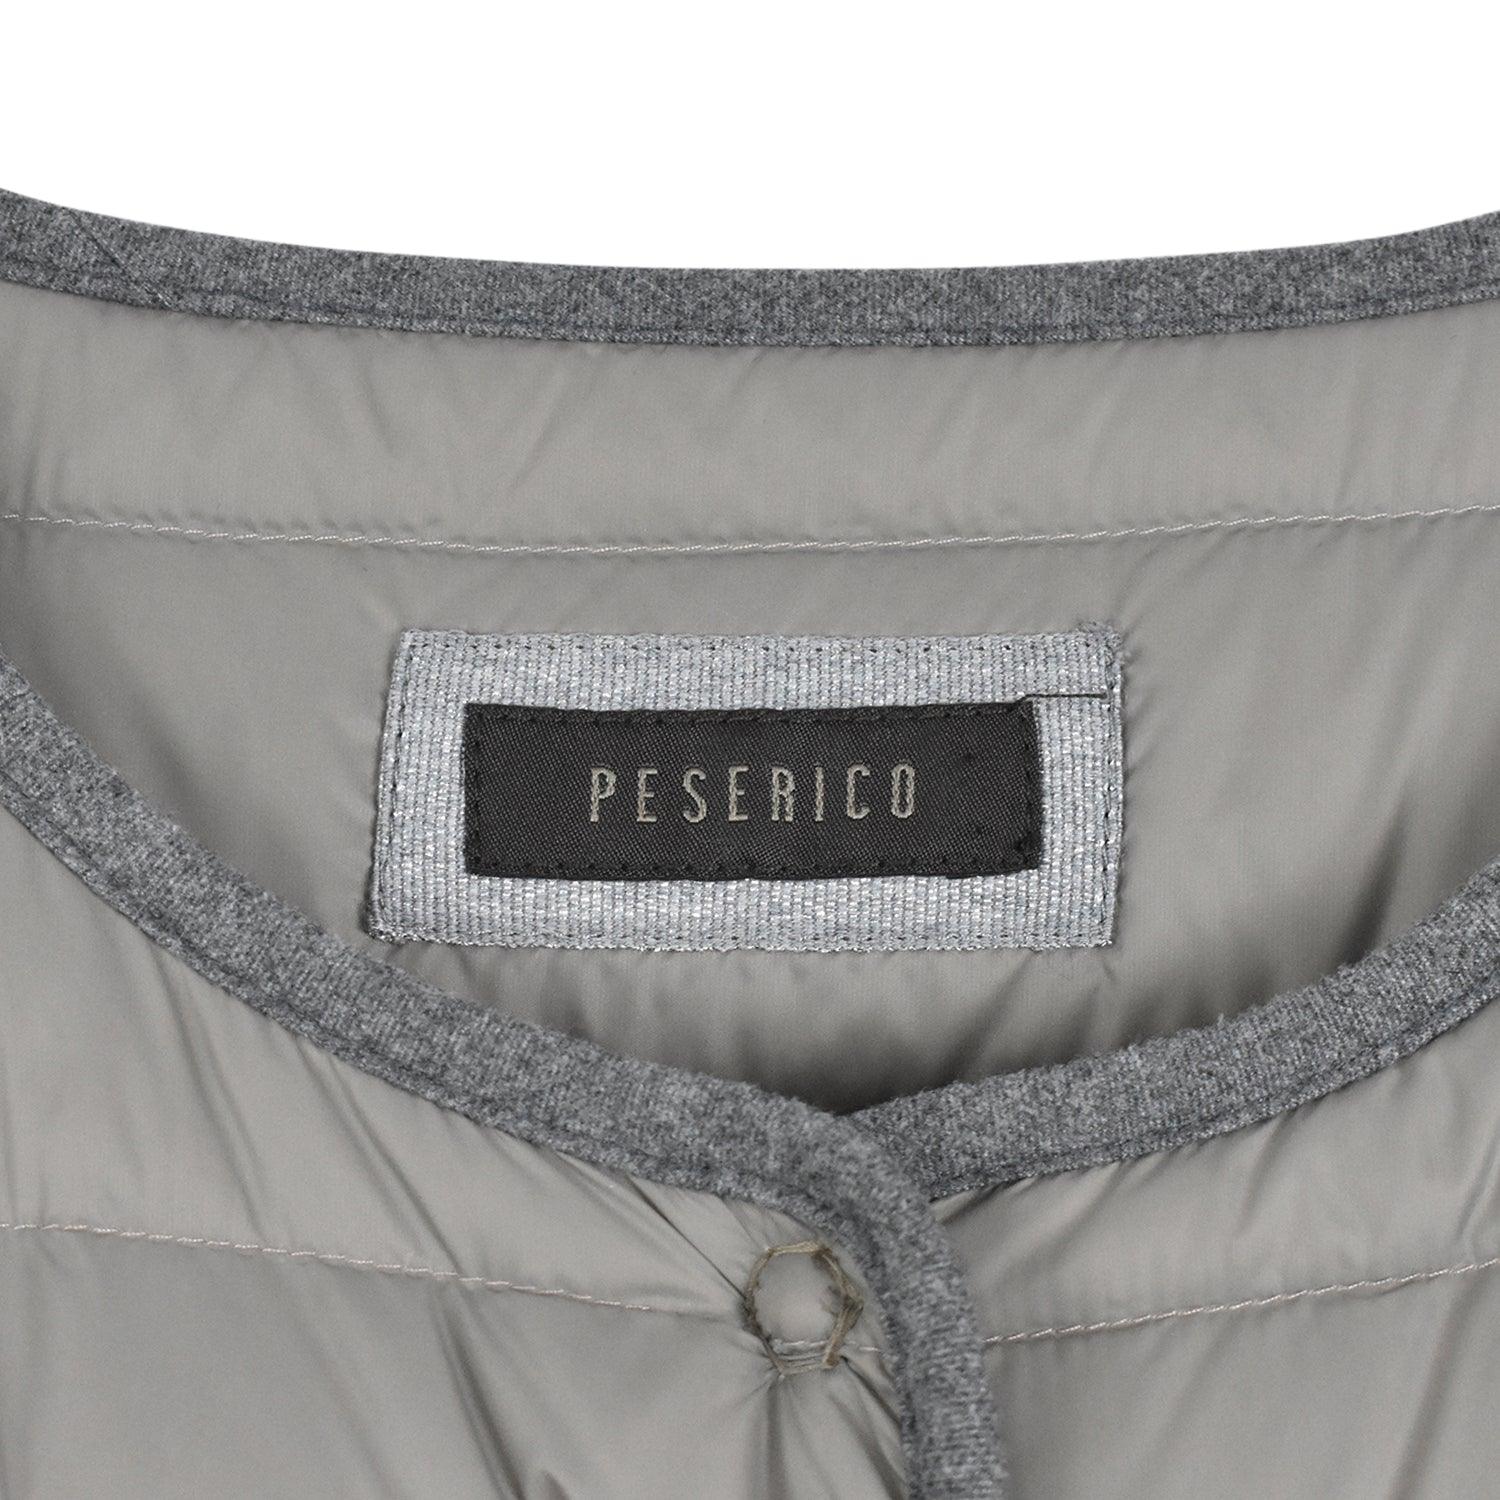 Peserico Jacket - Women's 44 - Fashionably Yours